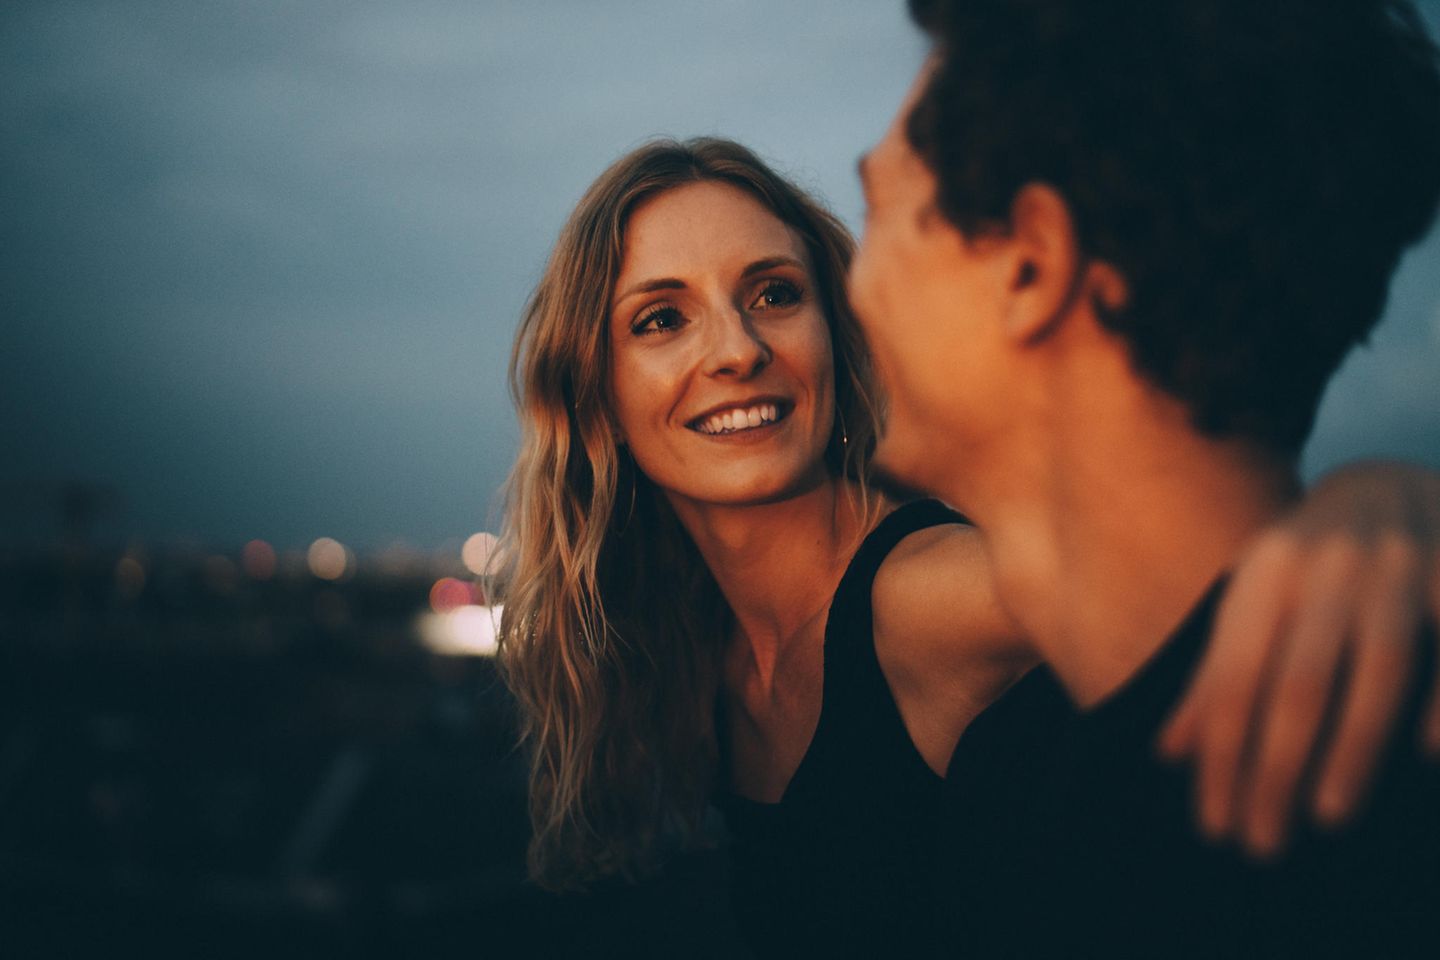 Freundschaft zwischen Mann und Frau: Mann und Frau schauen sich lächelnd an